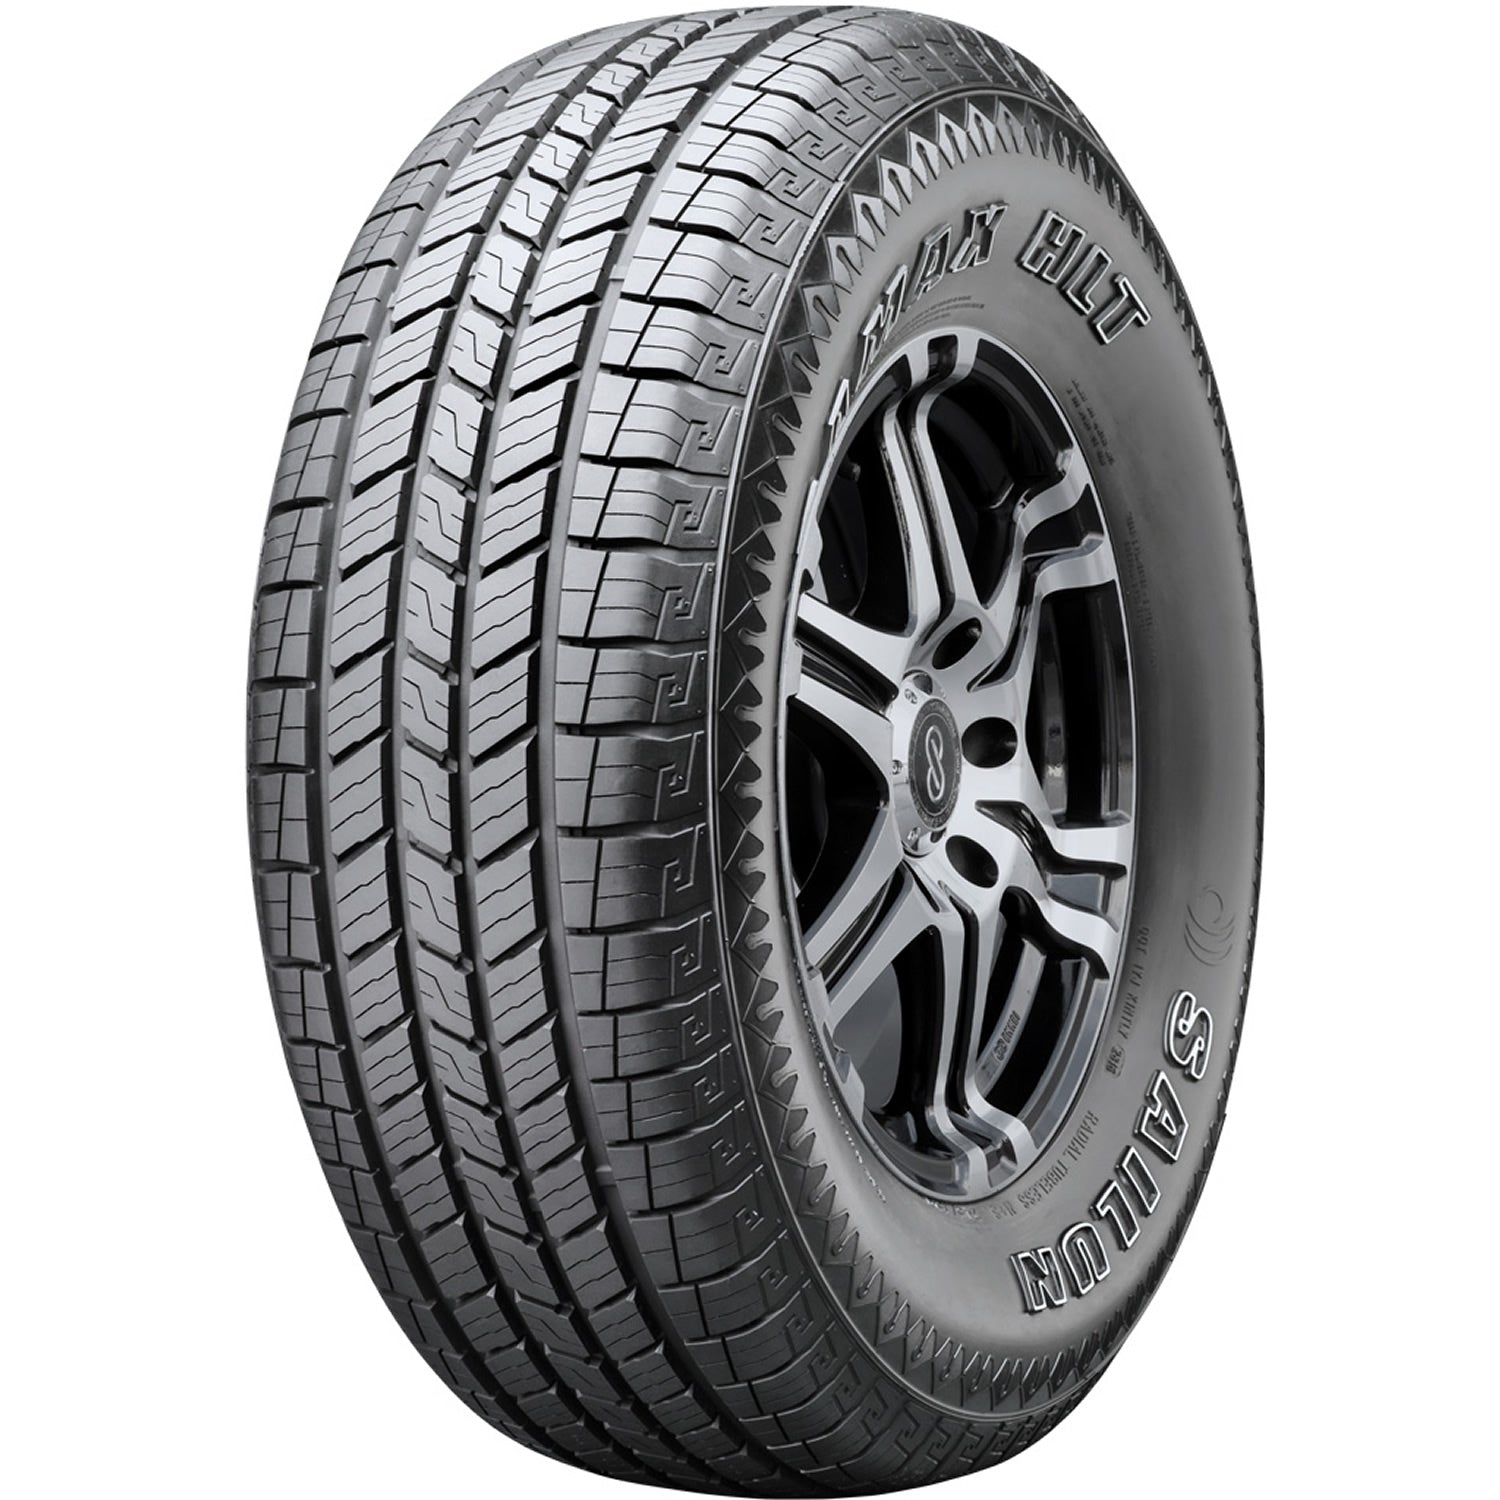 SAILUN TERRAMAX HLT 235/70R16 (29X9.5R 16) Tires